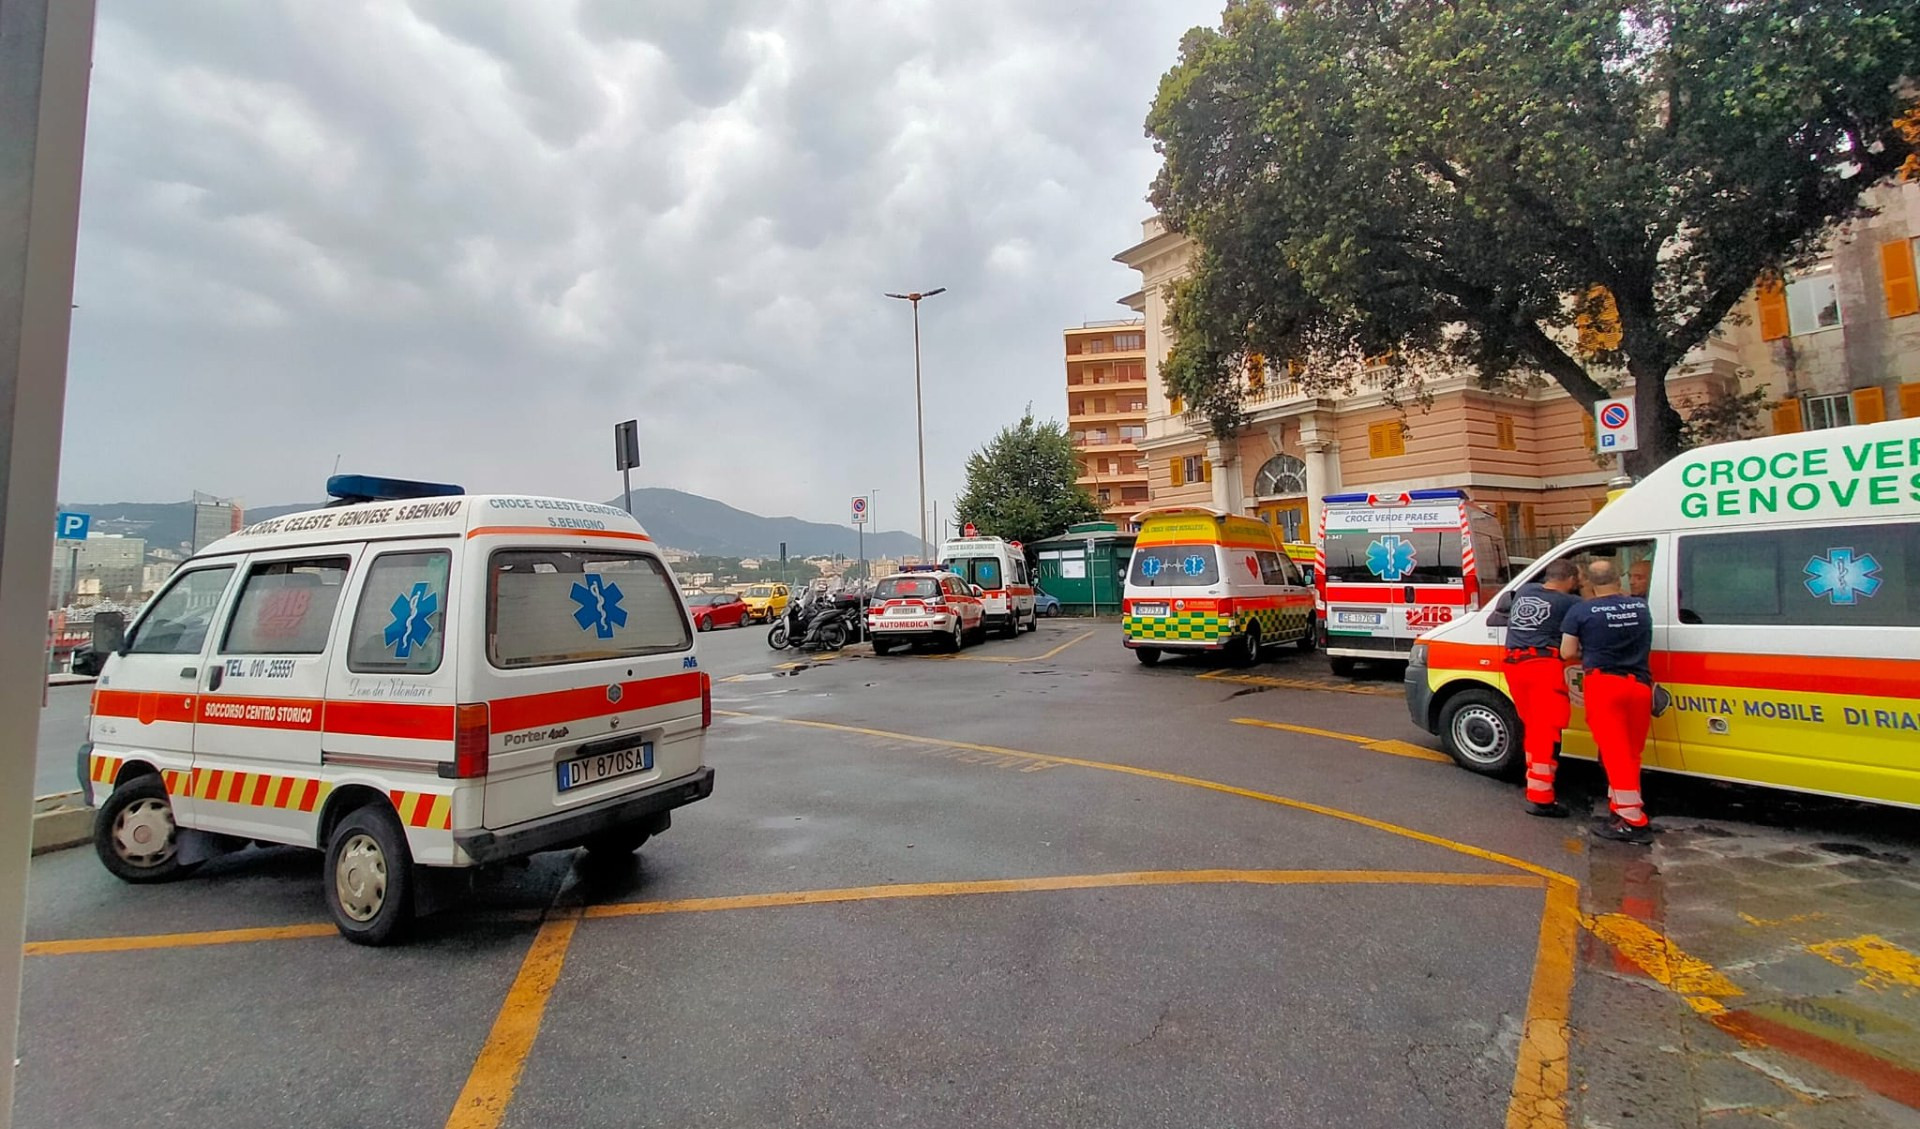 A Genova pronto soccorso in tilt, ambulanze bloccate davanti a Galliera e San Martino